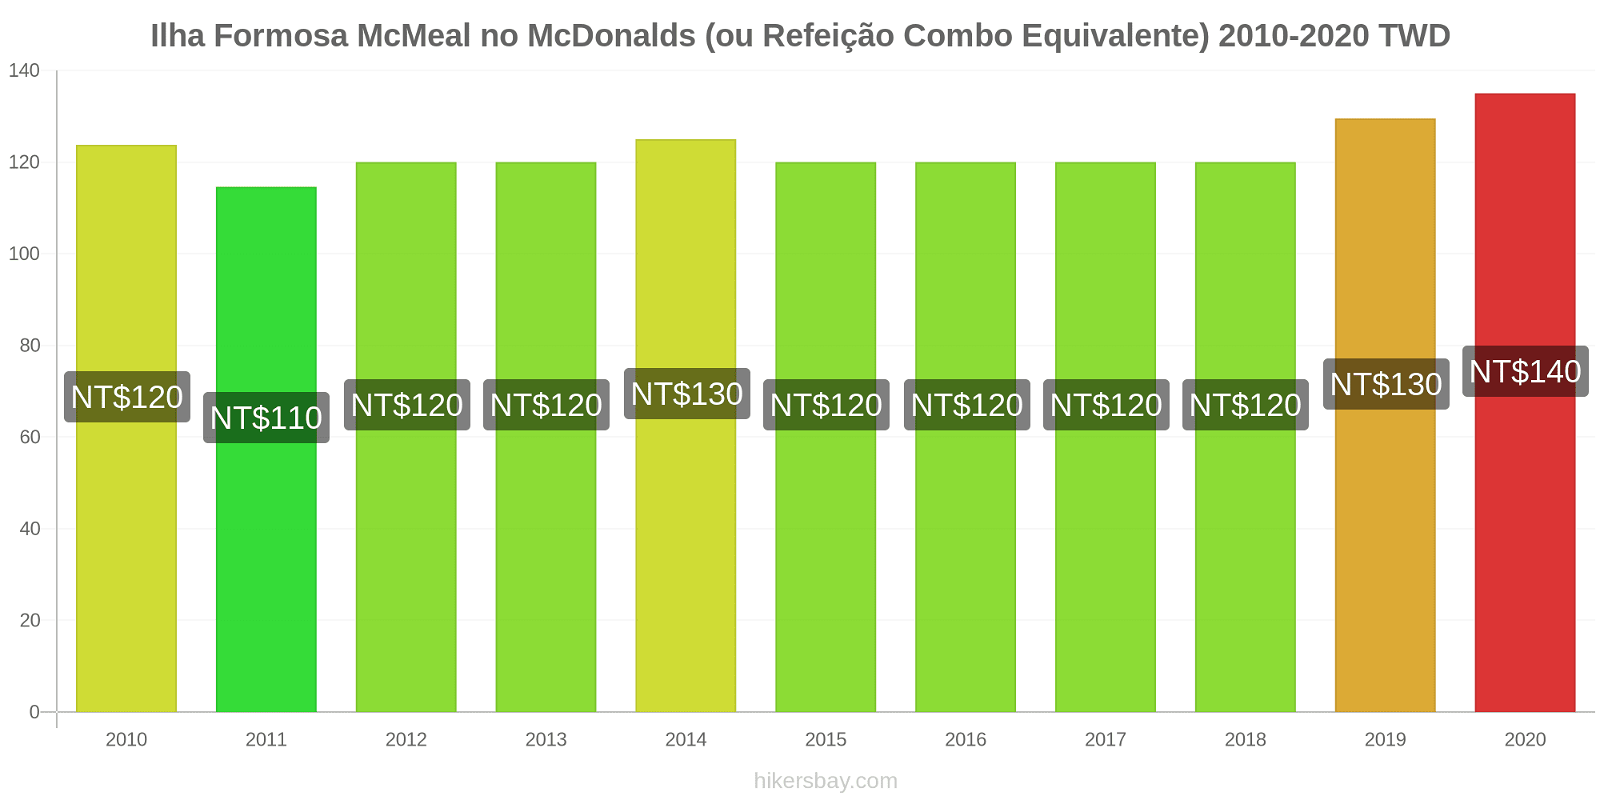 Ilha Formosa variação de preço McMeal no McDonald ' s (ou refeição Combo equivalente) hikersbay.com